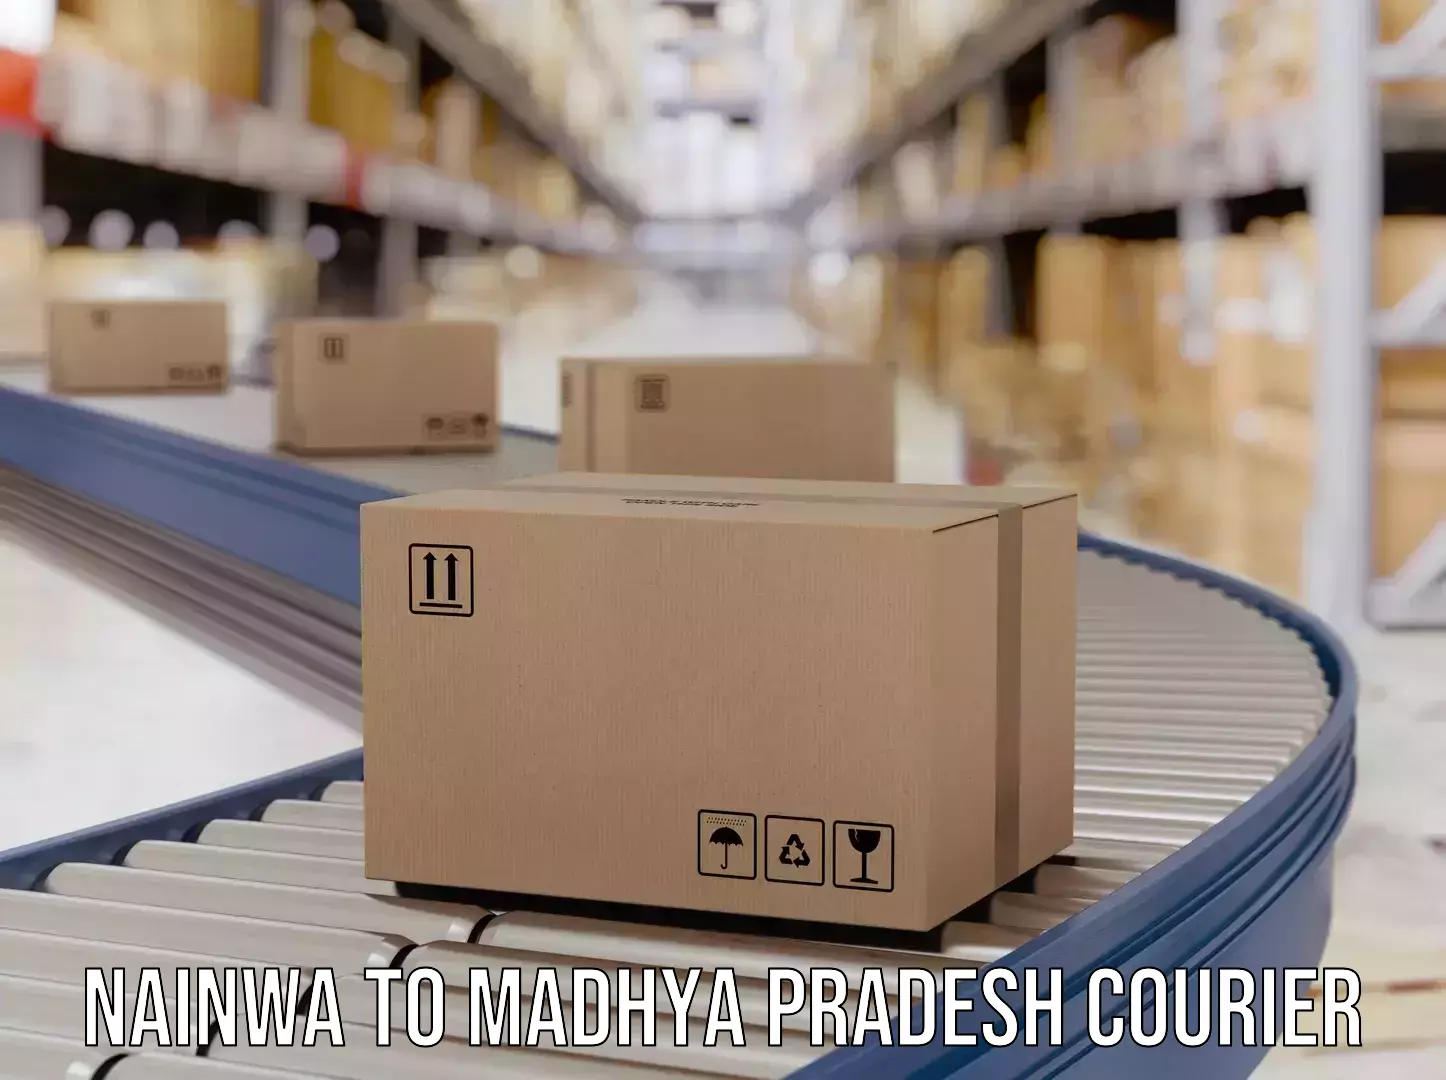 Courier service comparison Nainwa to Sendhwa